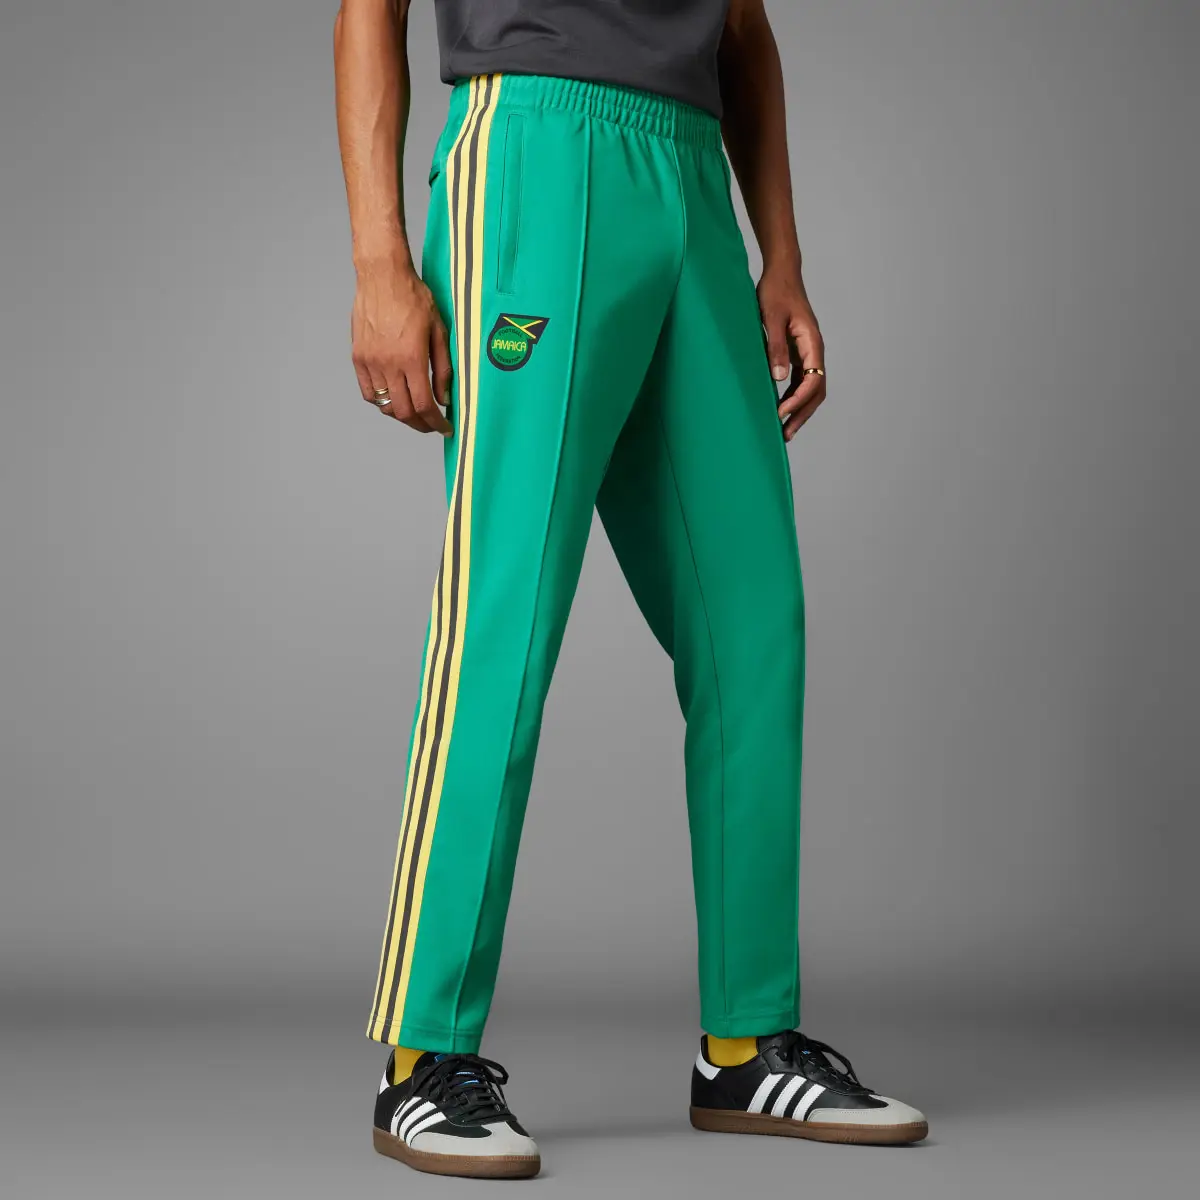 Adidas Pants Beckenbauer Jamaica. 1